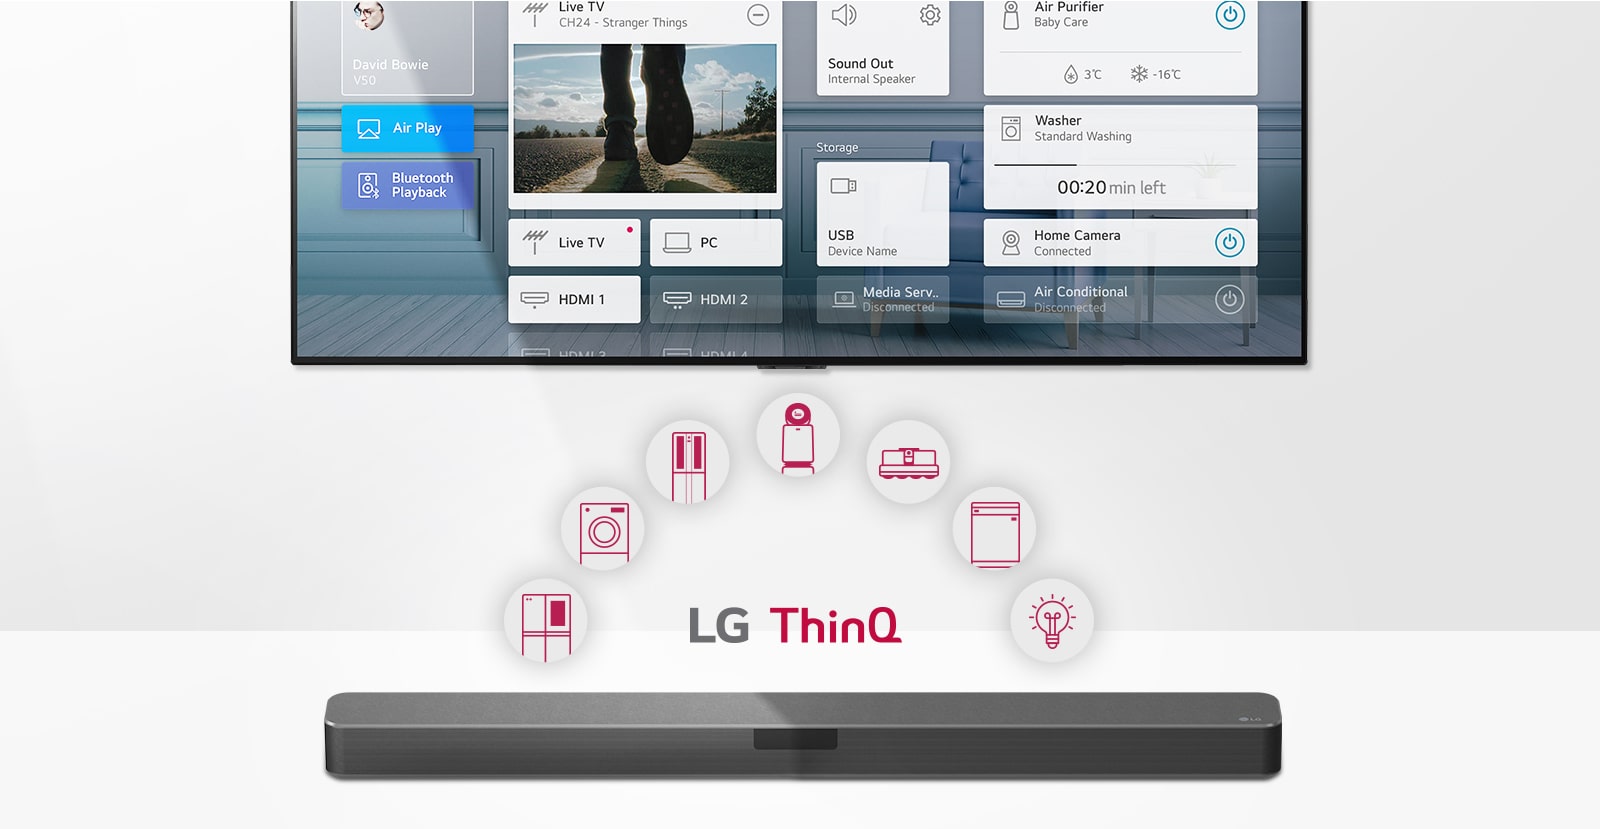 Зображення телевізора на стіні, саундбара LG під телевізором, логотипа LG ThinQ та піктограм побутових приладів між телевізором і саундбаром LG.